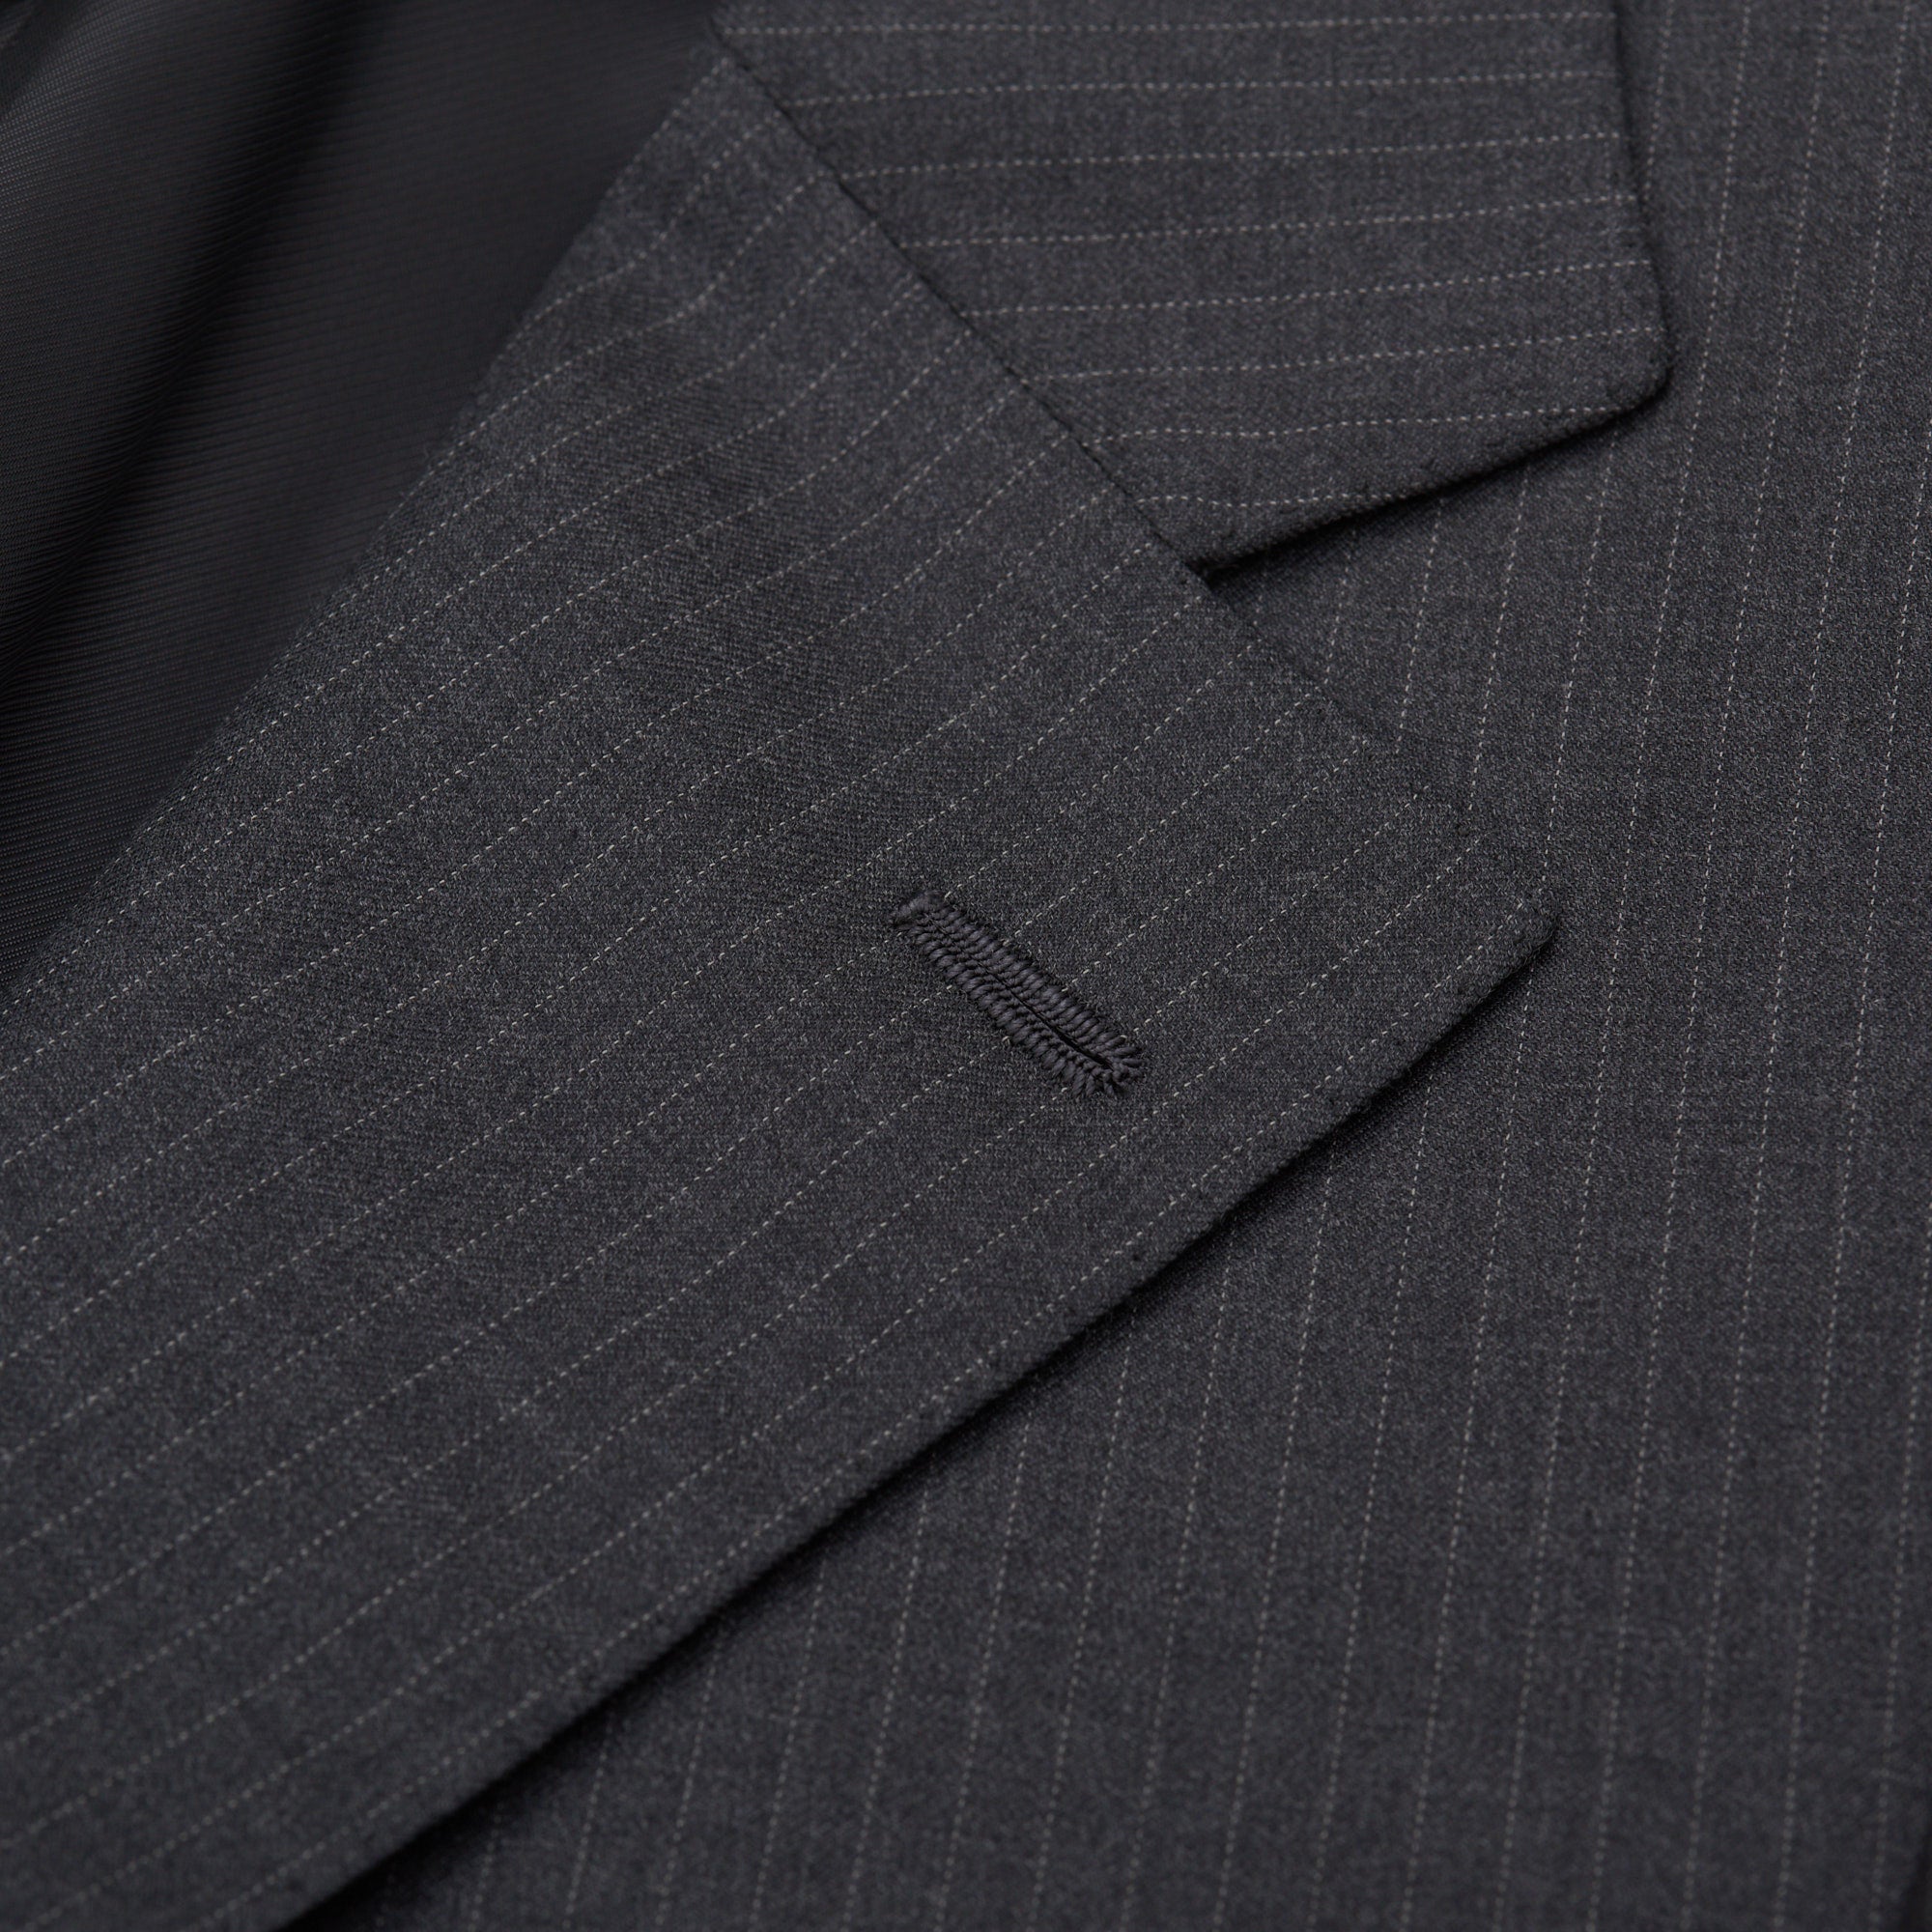 CESARE ATTOLINI Napoli Handmade Gray Striped Wool Super 150's Suit 50 NEW US 40 CESARE ATTOLINI